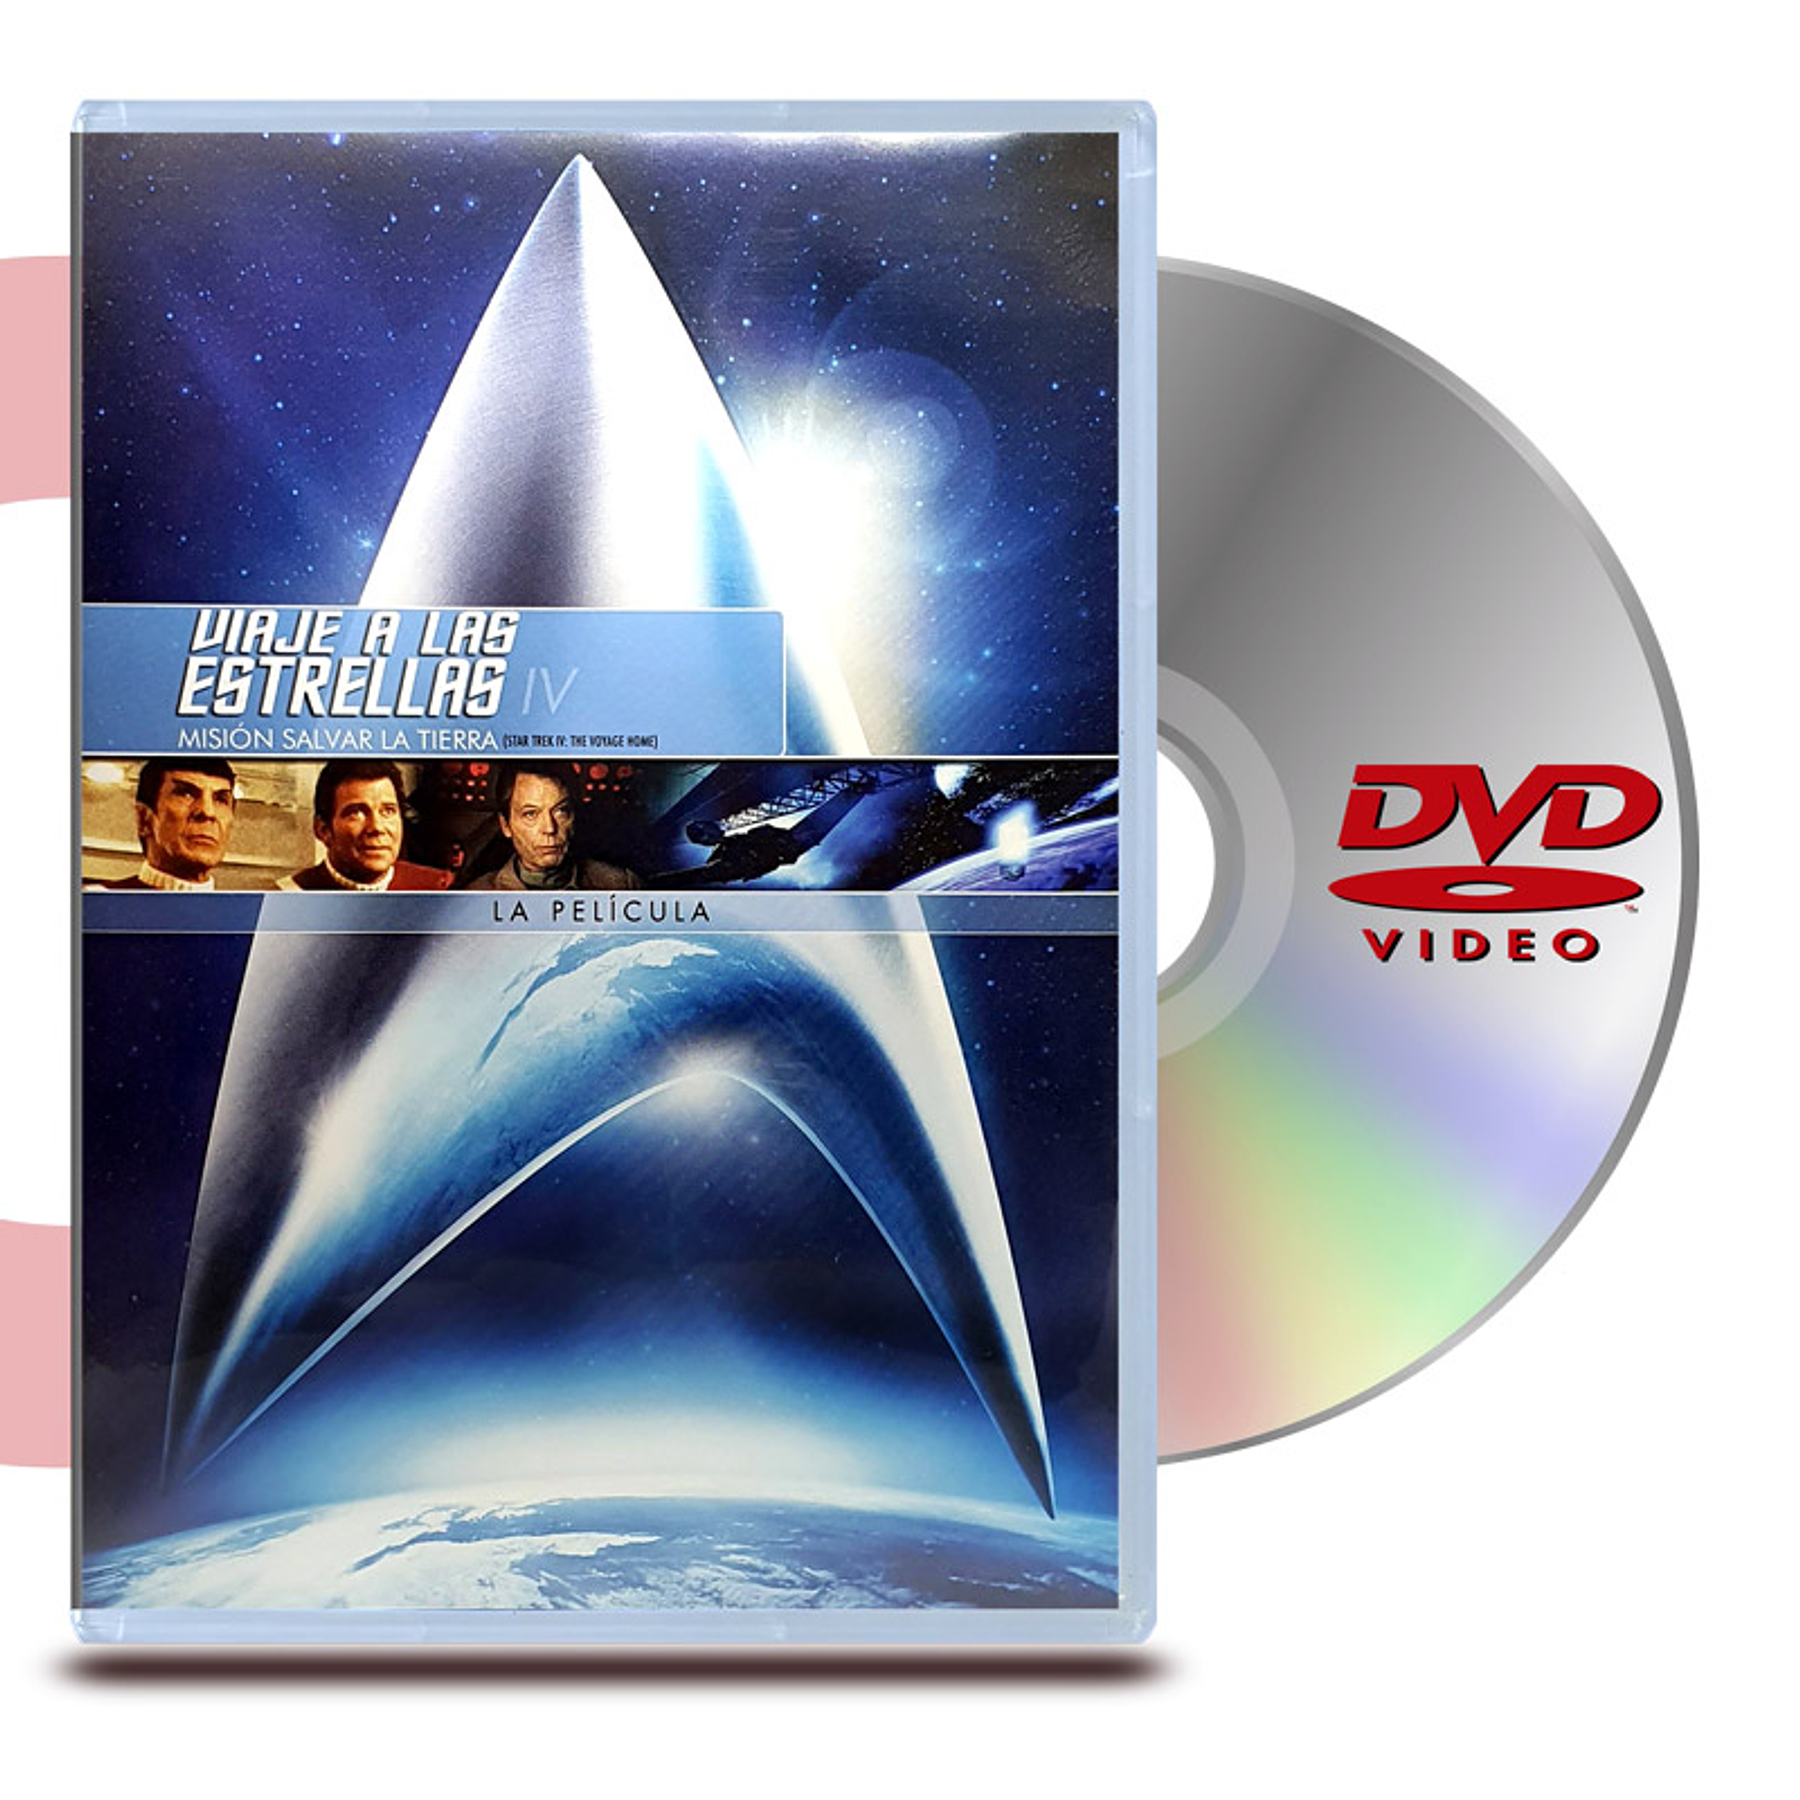 DVD STAR TREK 4 MISIÓN: SALVAR LA TIERRA - VIAJE A LAS ESTRELLAS 4